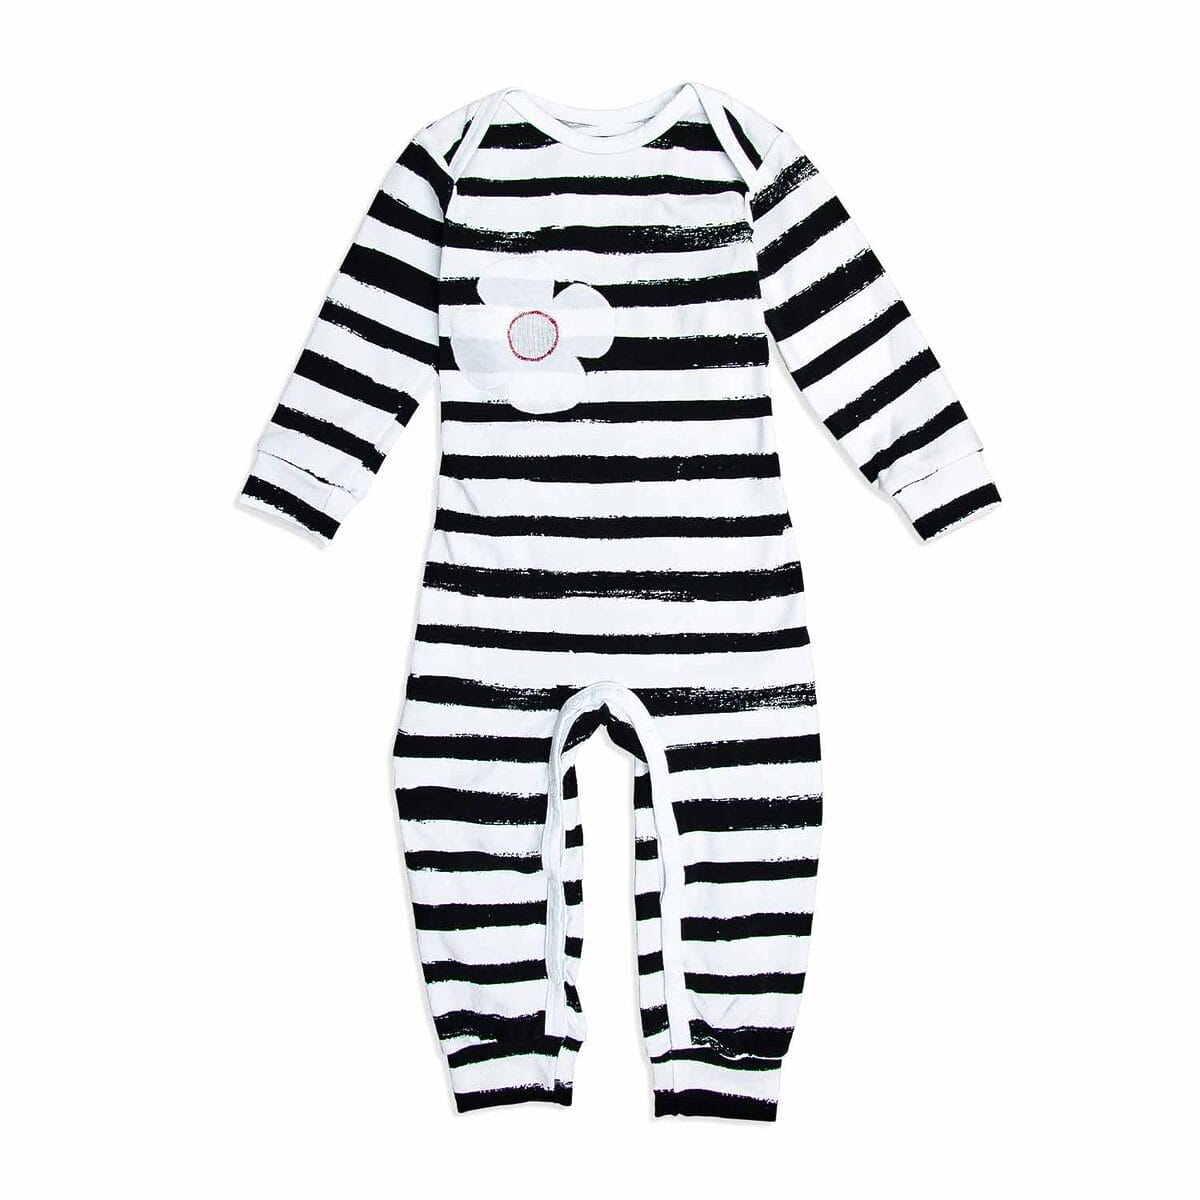 Baby-Schlafanzug in Schwarz-Weiß-Streifen aus Bio-Baumwolle, kompatibel mit MARY by sticklett Sensor-Applikation für eine sichere Überwachung.